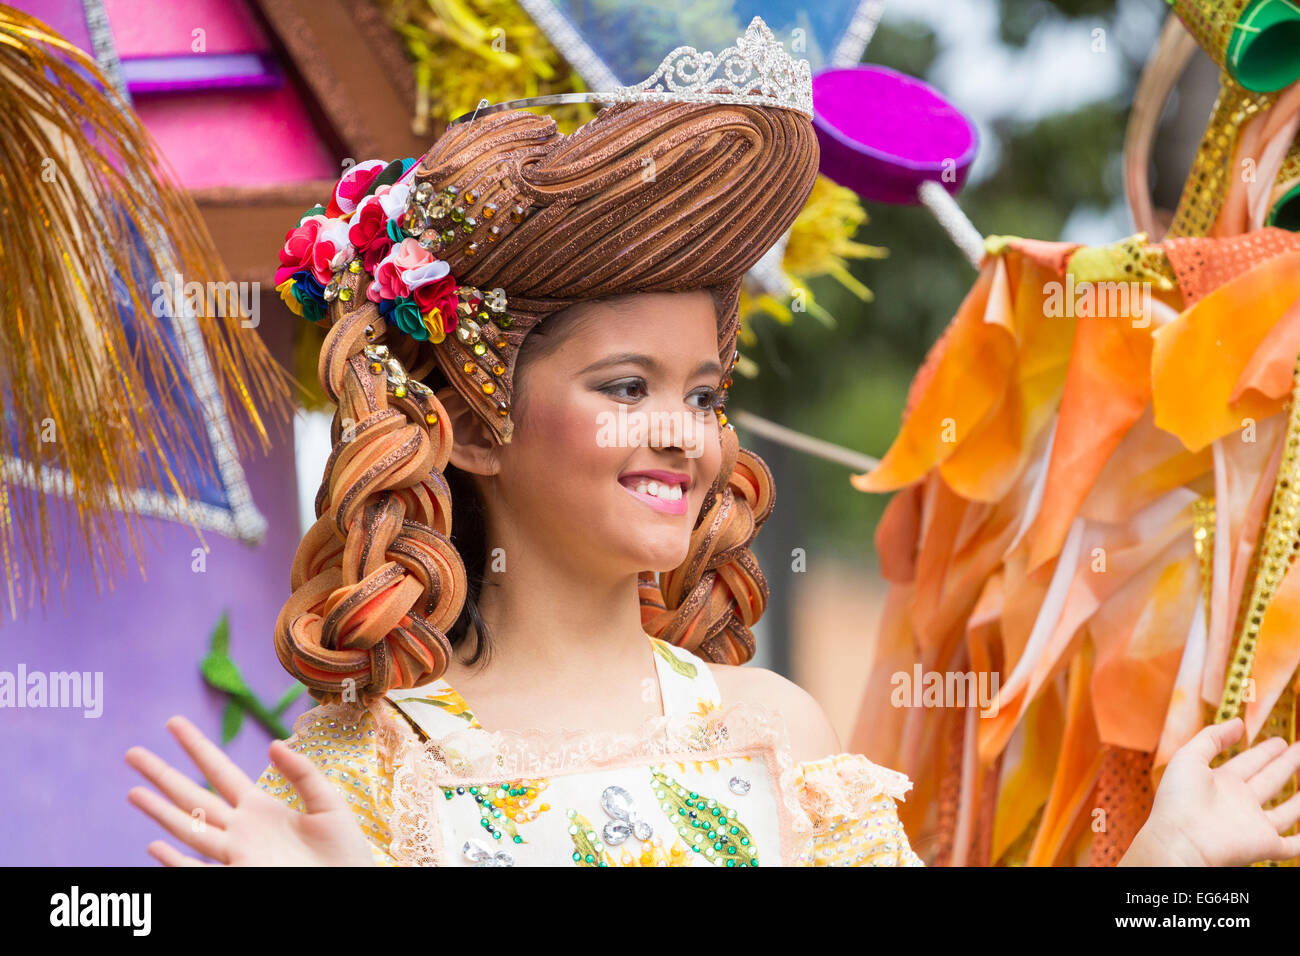 Las Palmas de Gran Canaria, Isole Canarie, Spagna. 17 Febbraio, 2015. Il primo posto nella Junior Carnival regina della concorrenza a Las Palmas carnevale a Gran Canaria come il mese lungo Carnevale entra nella sua terza settimana. Credito: ALANDAWSONPHOTOGRAPHY/Alamy Live News Foto Stock